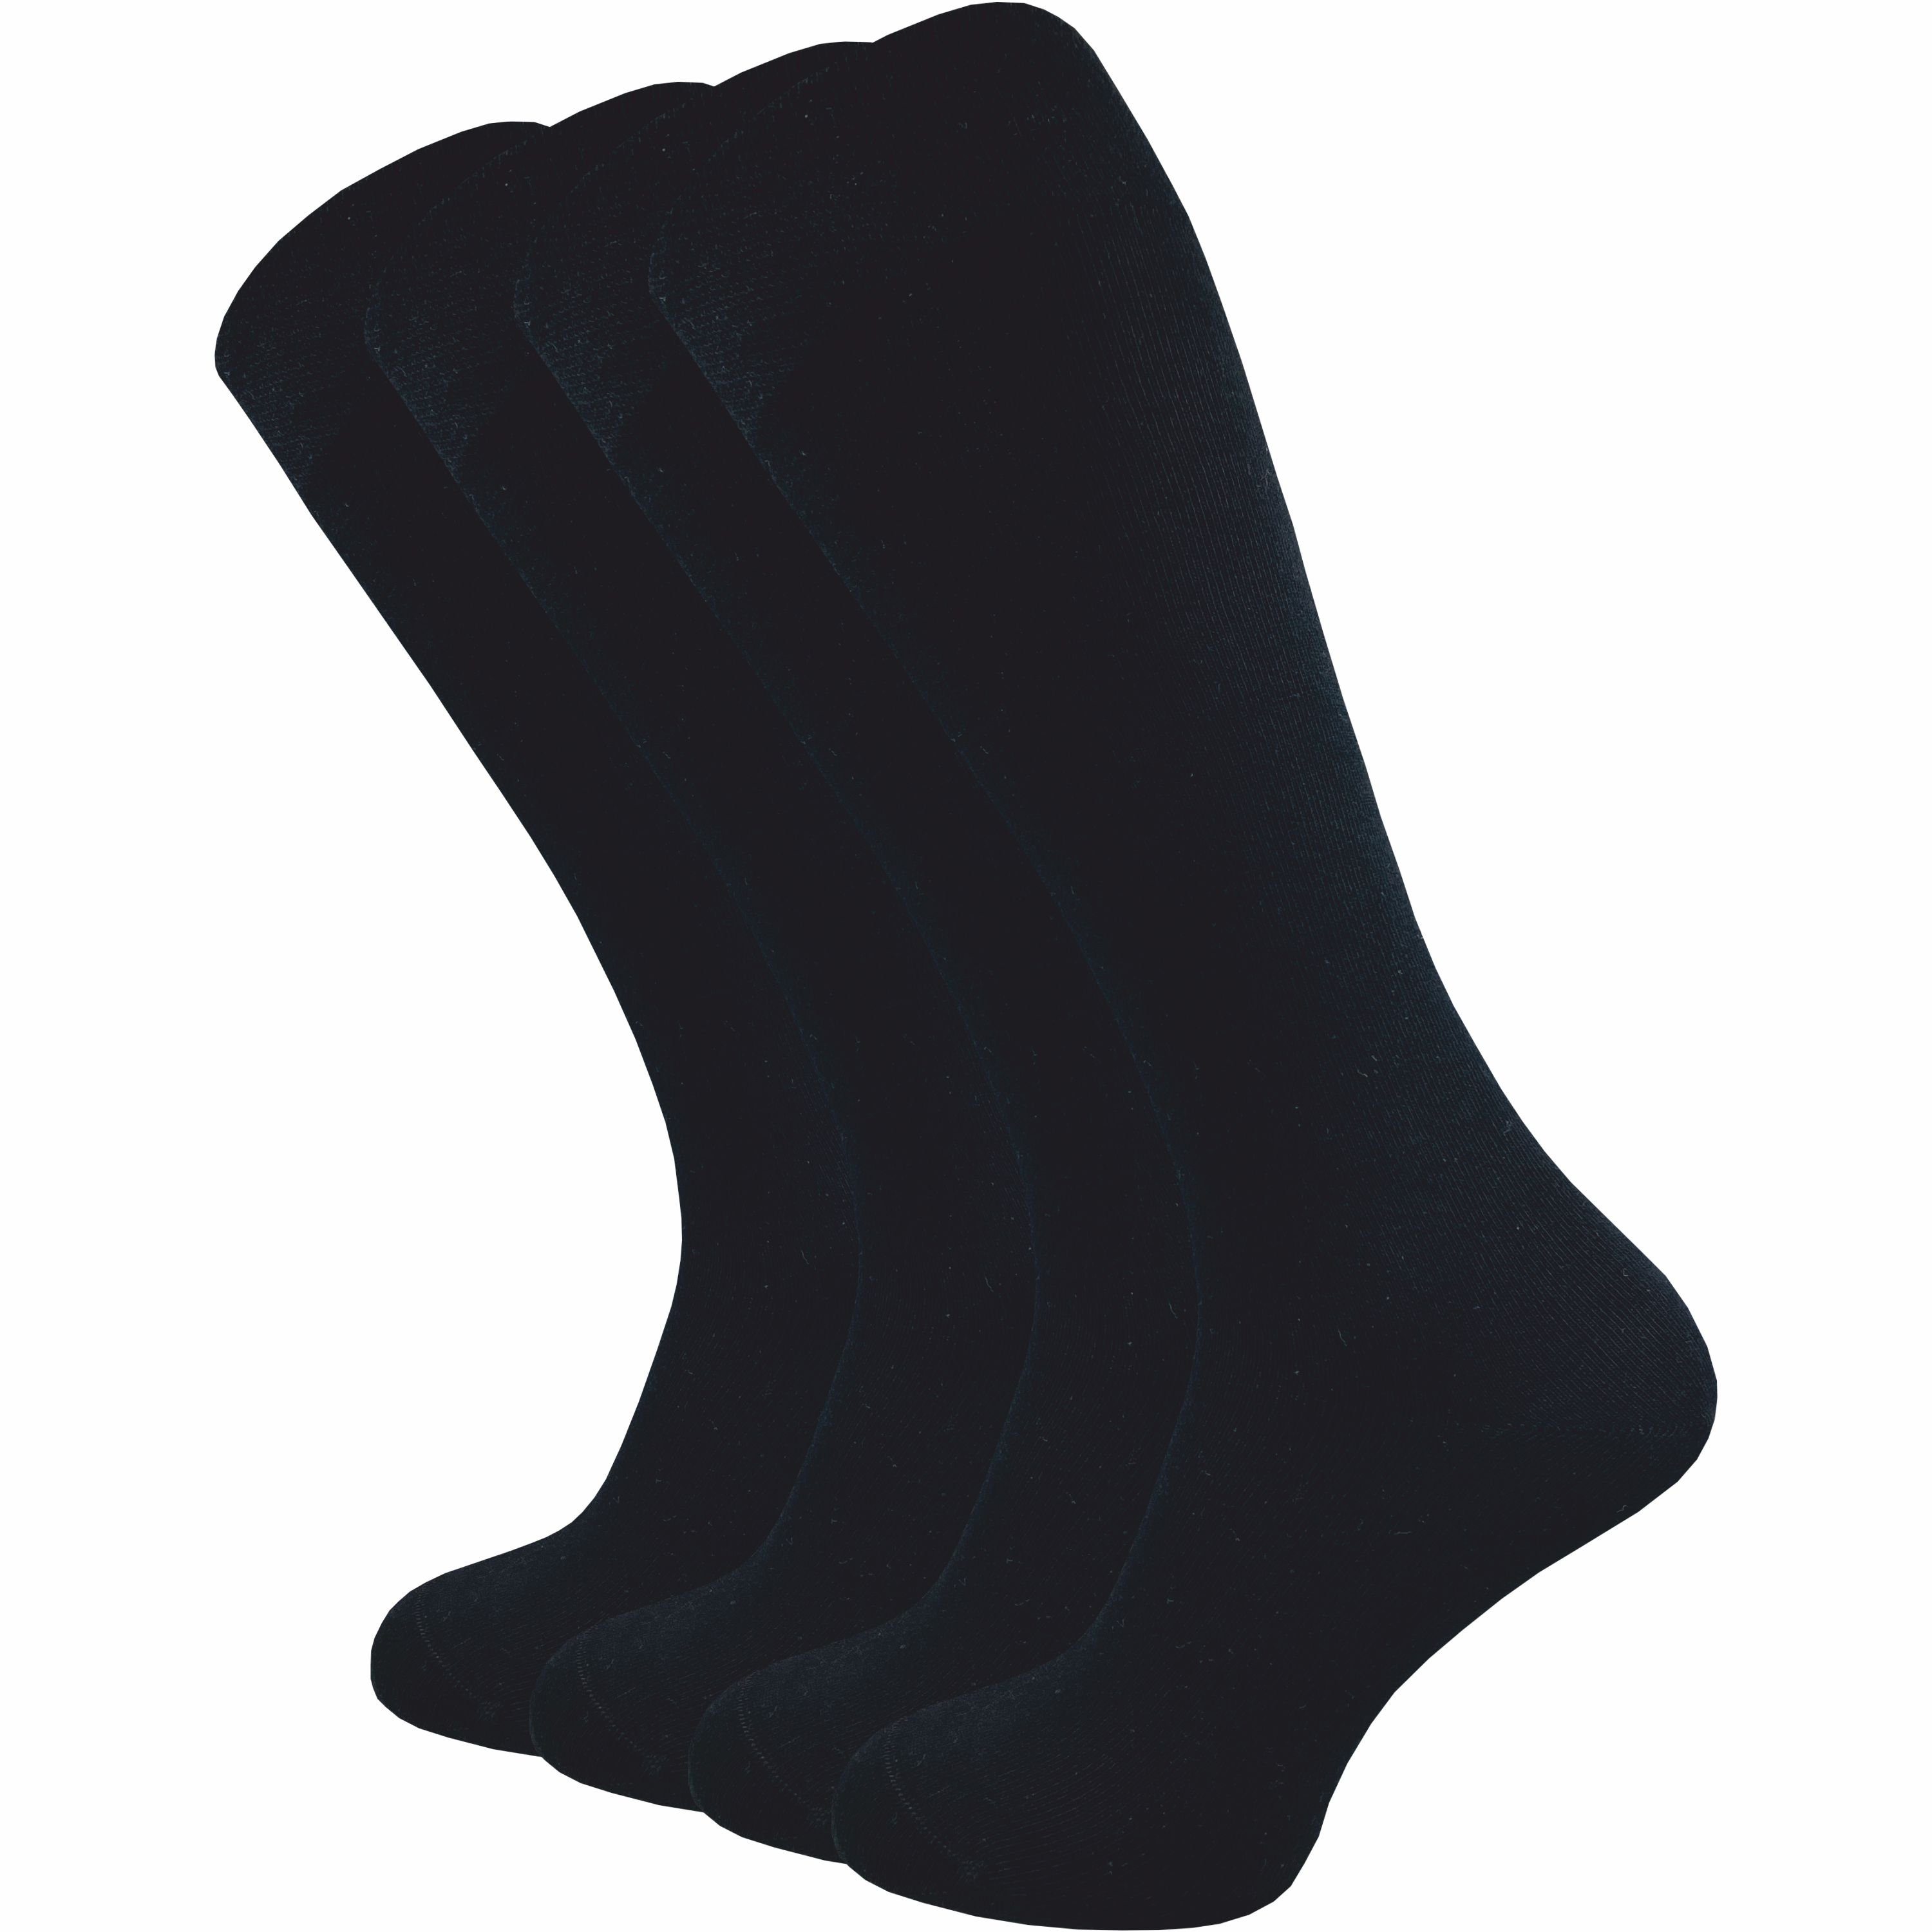 GAWILO Kniestrümpfe für Damen & Herren aus hochwertiger Baumwolle mit Komfortbund (4 Paar) Extra weicher Komfortbund, der nicht verrutscht ohne einzuschneiden schwarz